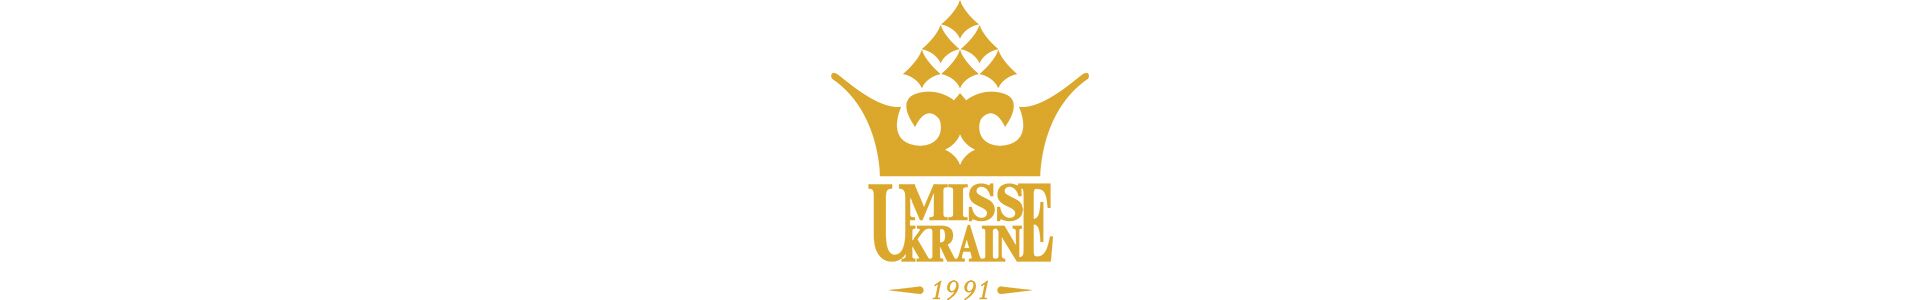 Відео благодійного проекту Міс Україна 2016 Олександри Кучеренко для Міс Світу